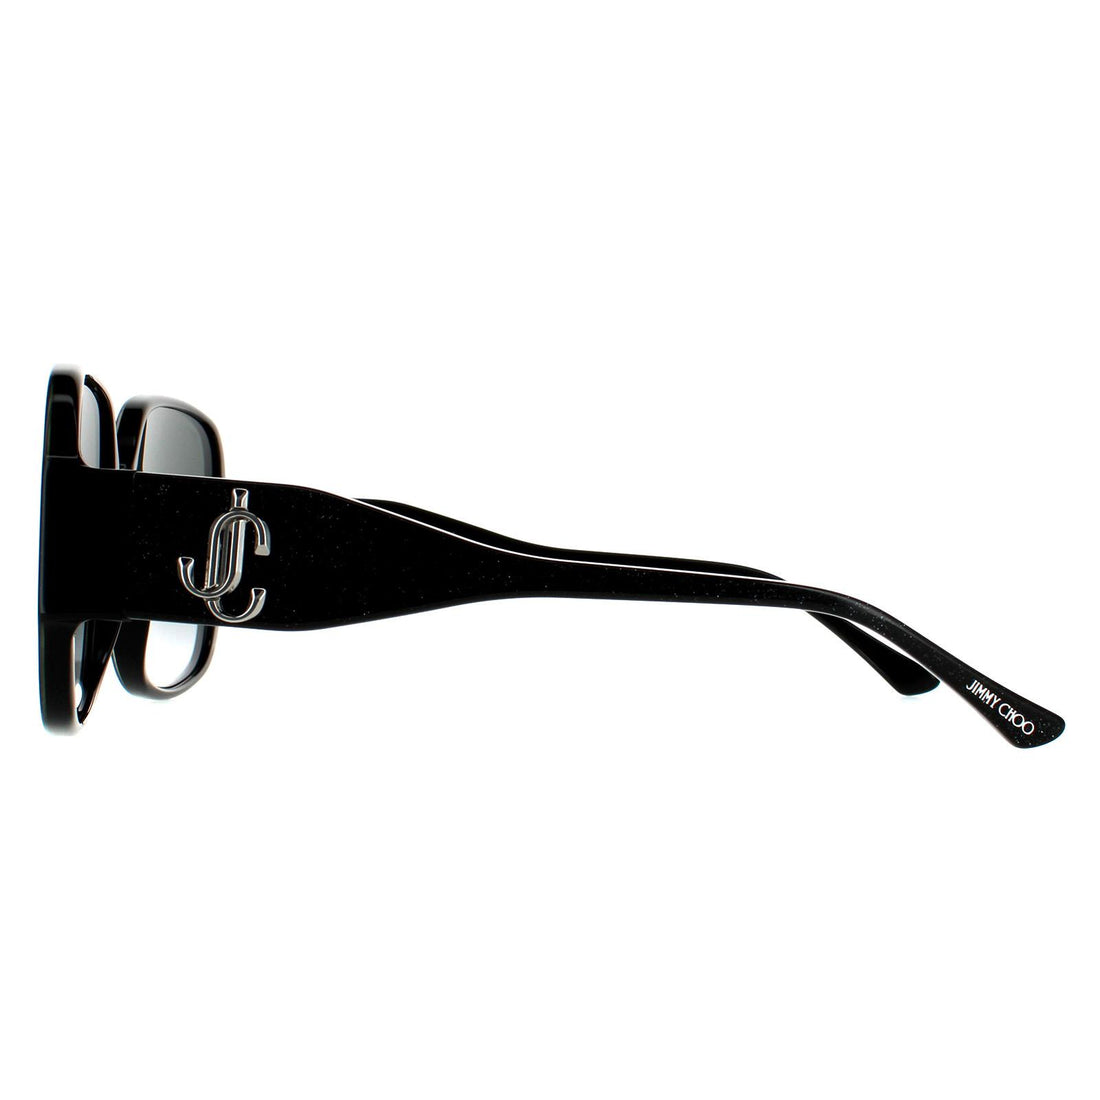 Jimmy Choo Sunglasses TARA/S DXF 9O Black Glitter Dark Grey Gradient